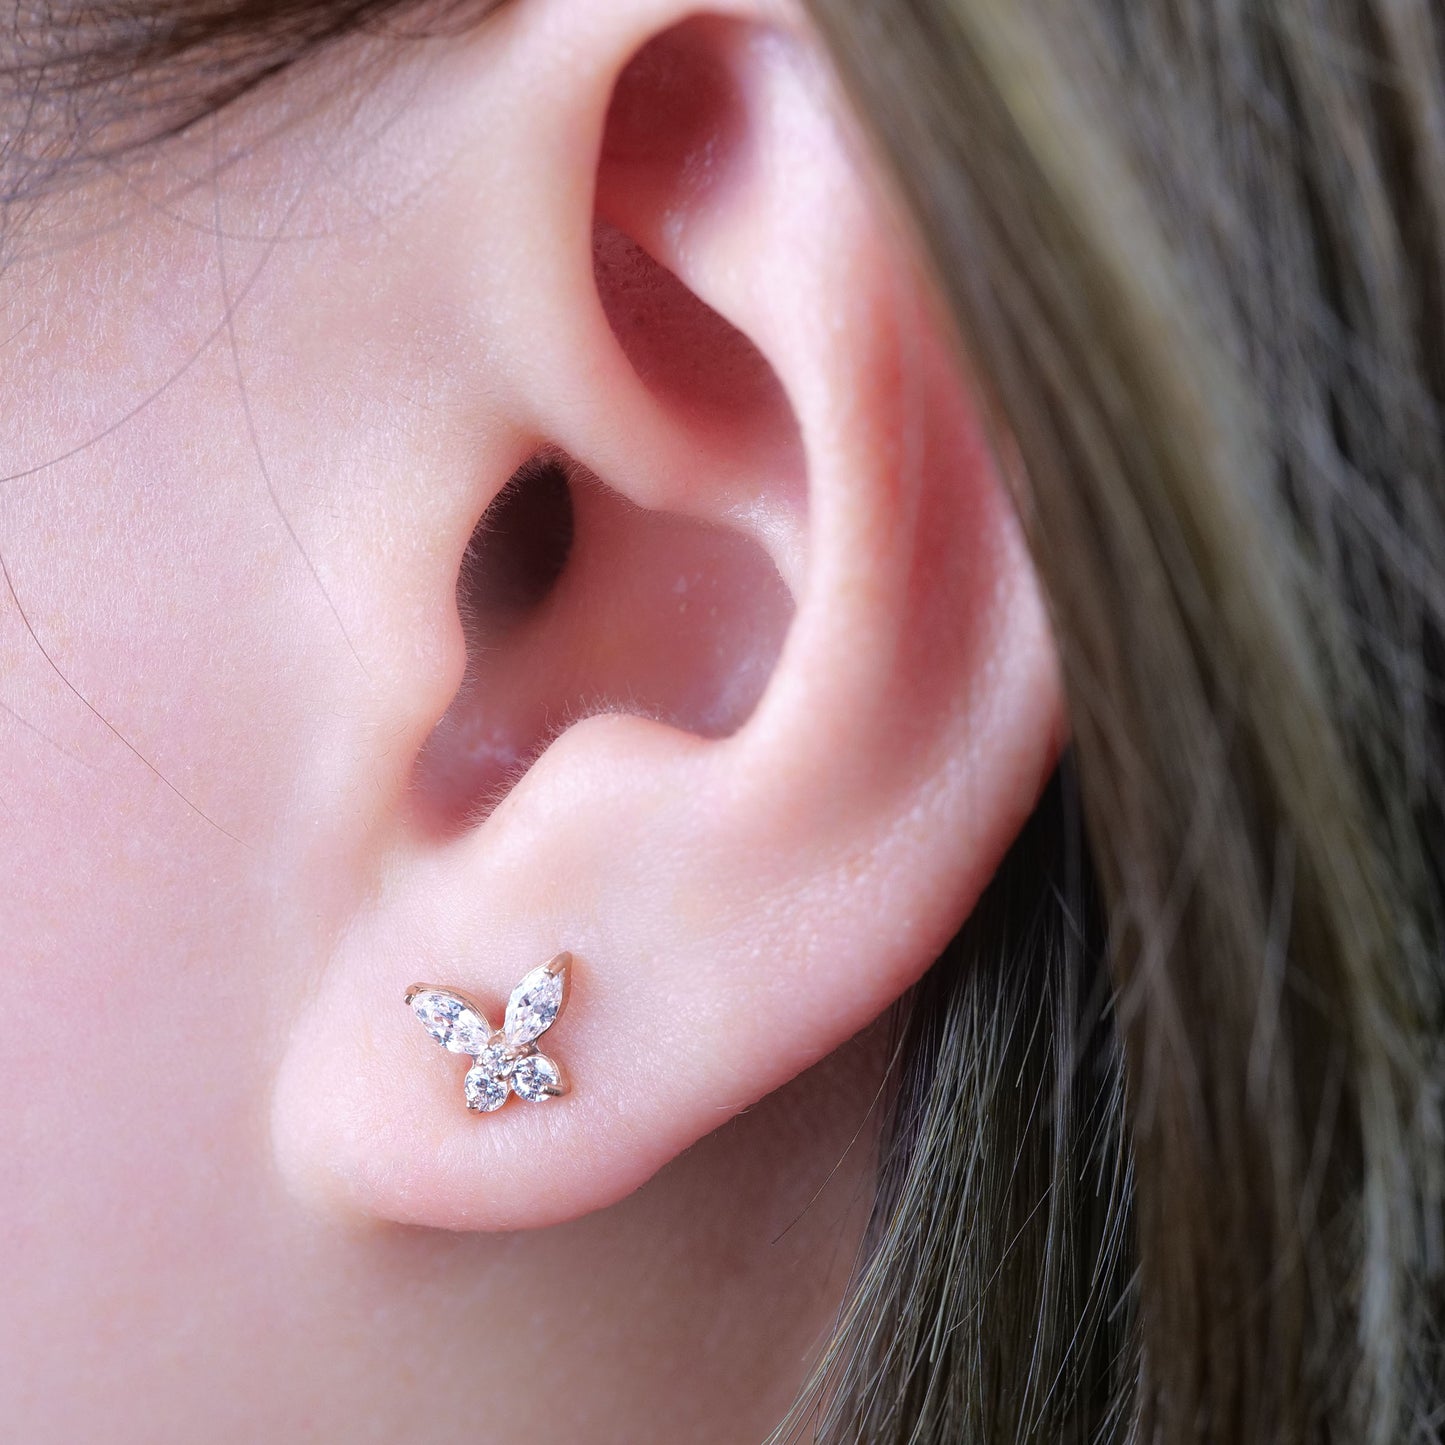 Limerencia Pendientes hipoalergénicos de titanio puro Mariposa delicada CZ G23 Piercing de grado de implante Joyería de moda para orejas sensibles